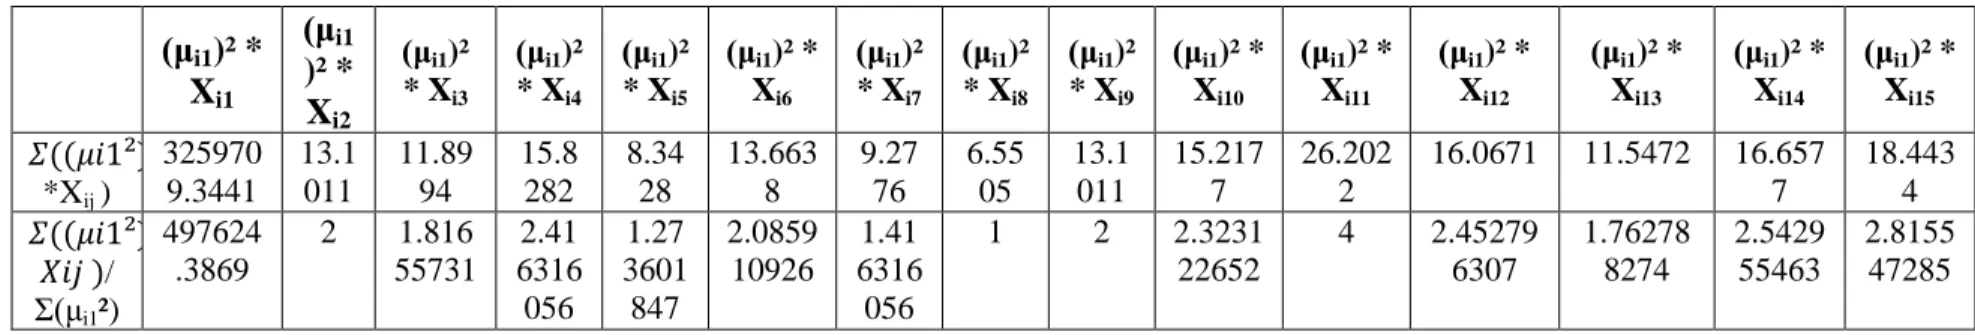 Tabel B.12 Perhitungan Pusat Cluster ke-2 Iterasi 3 